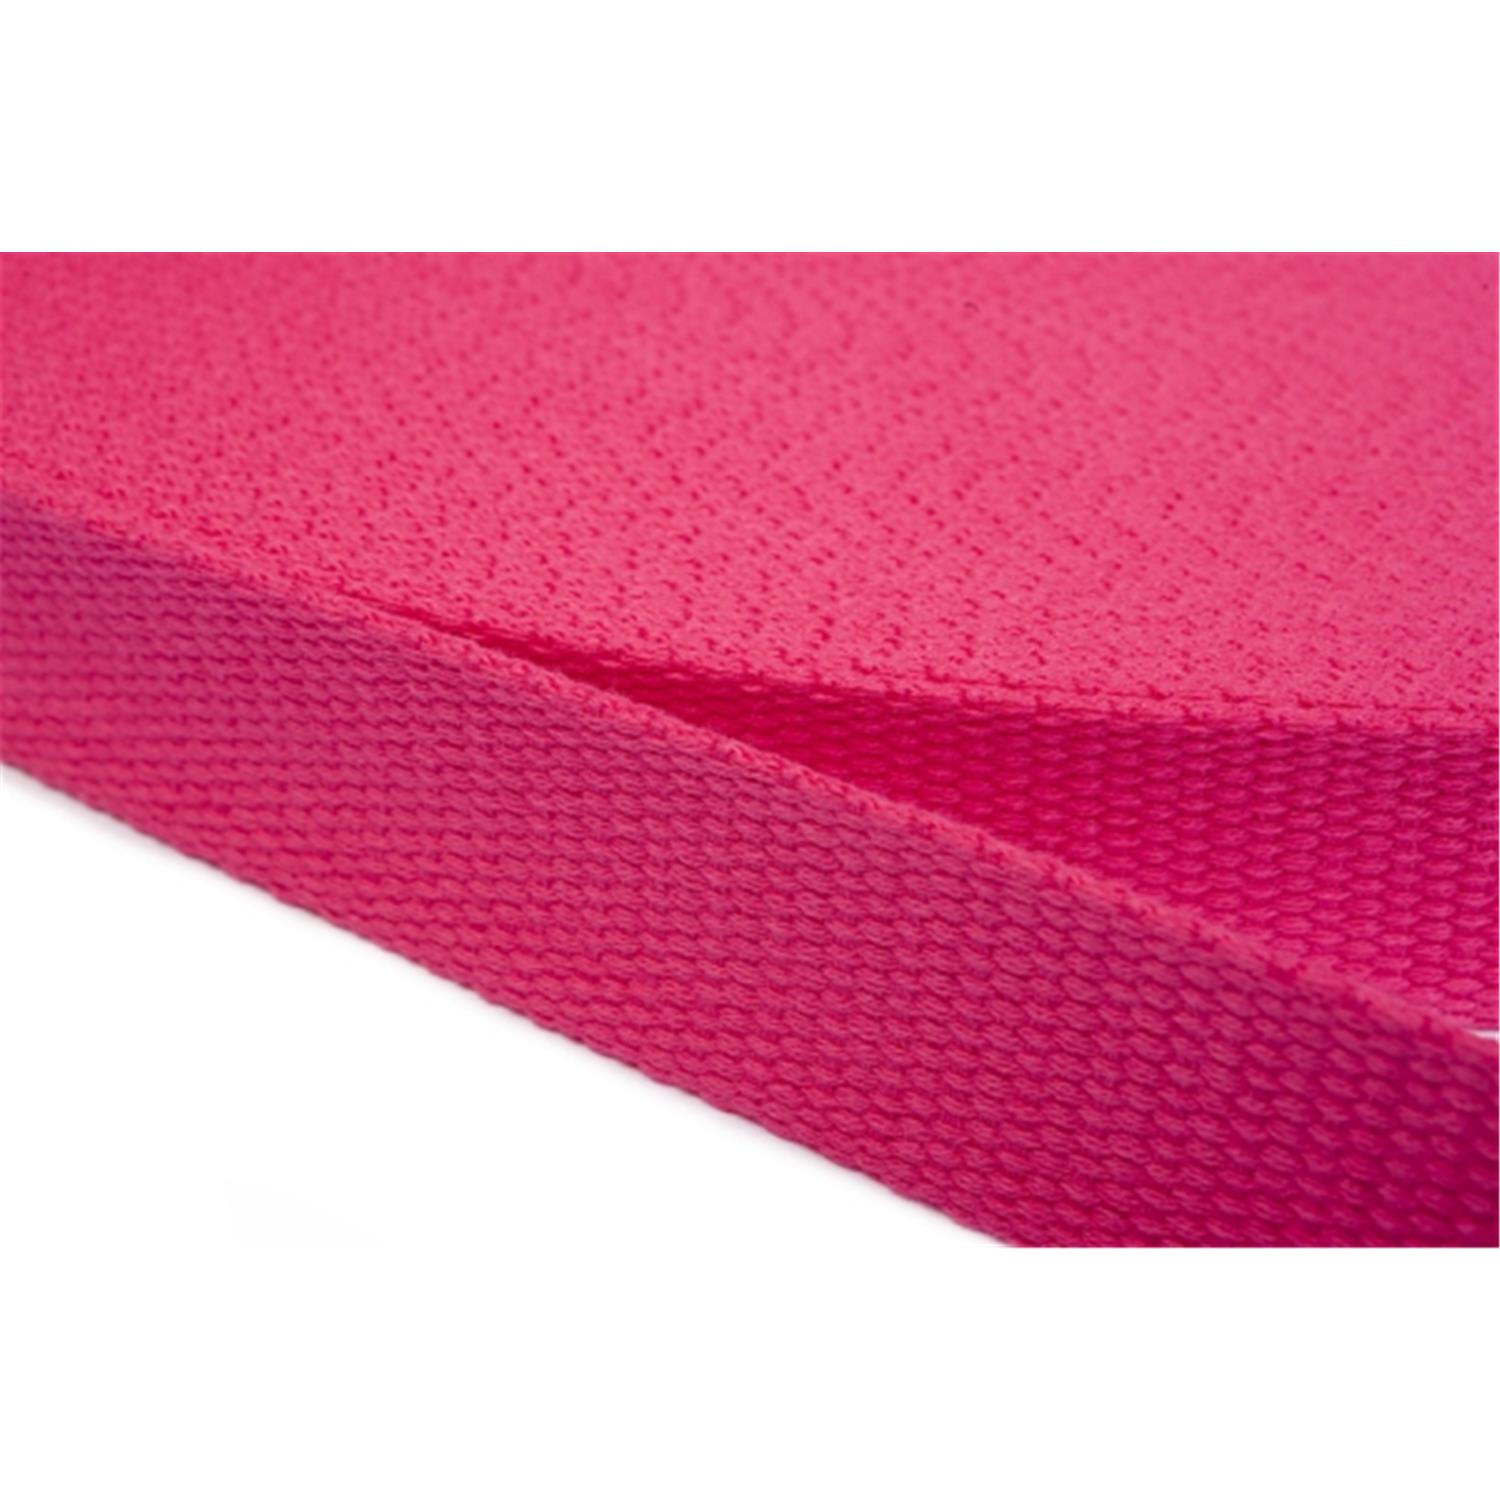 Gurtband aus Baumwolle 40mm in 20 Farben 07 - rosa/pink 6 Meter